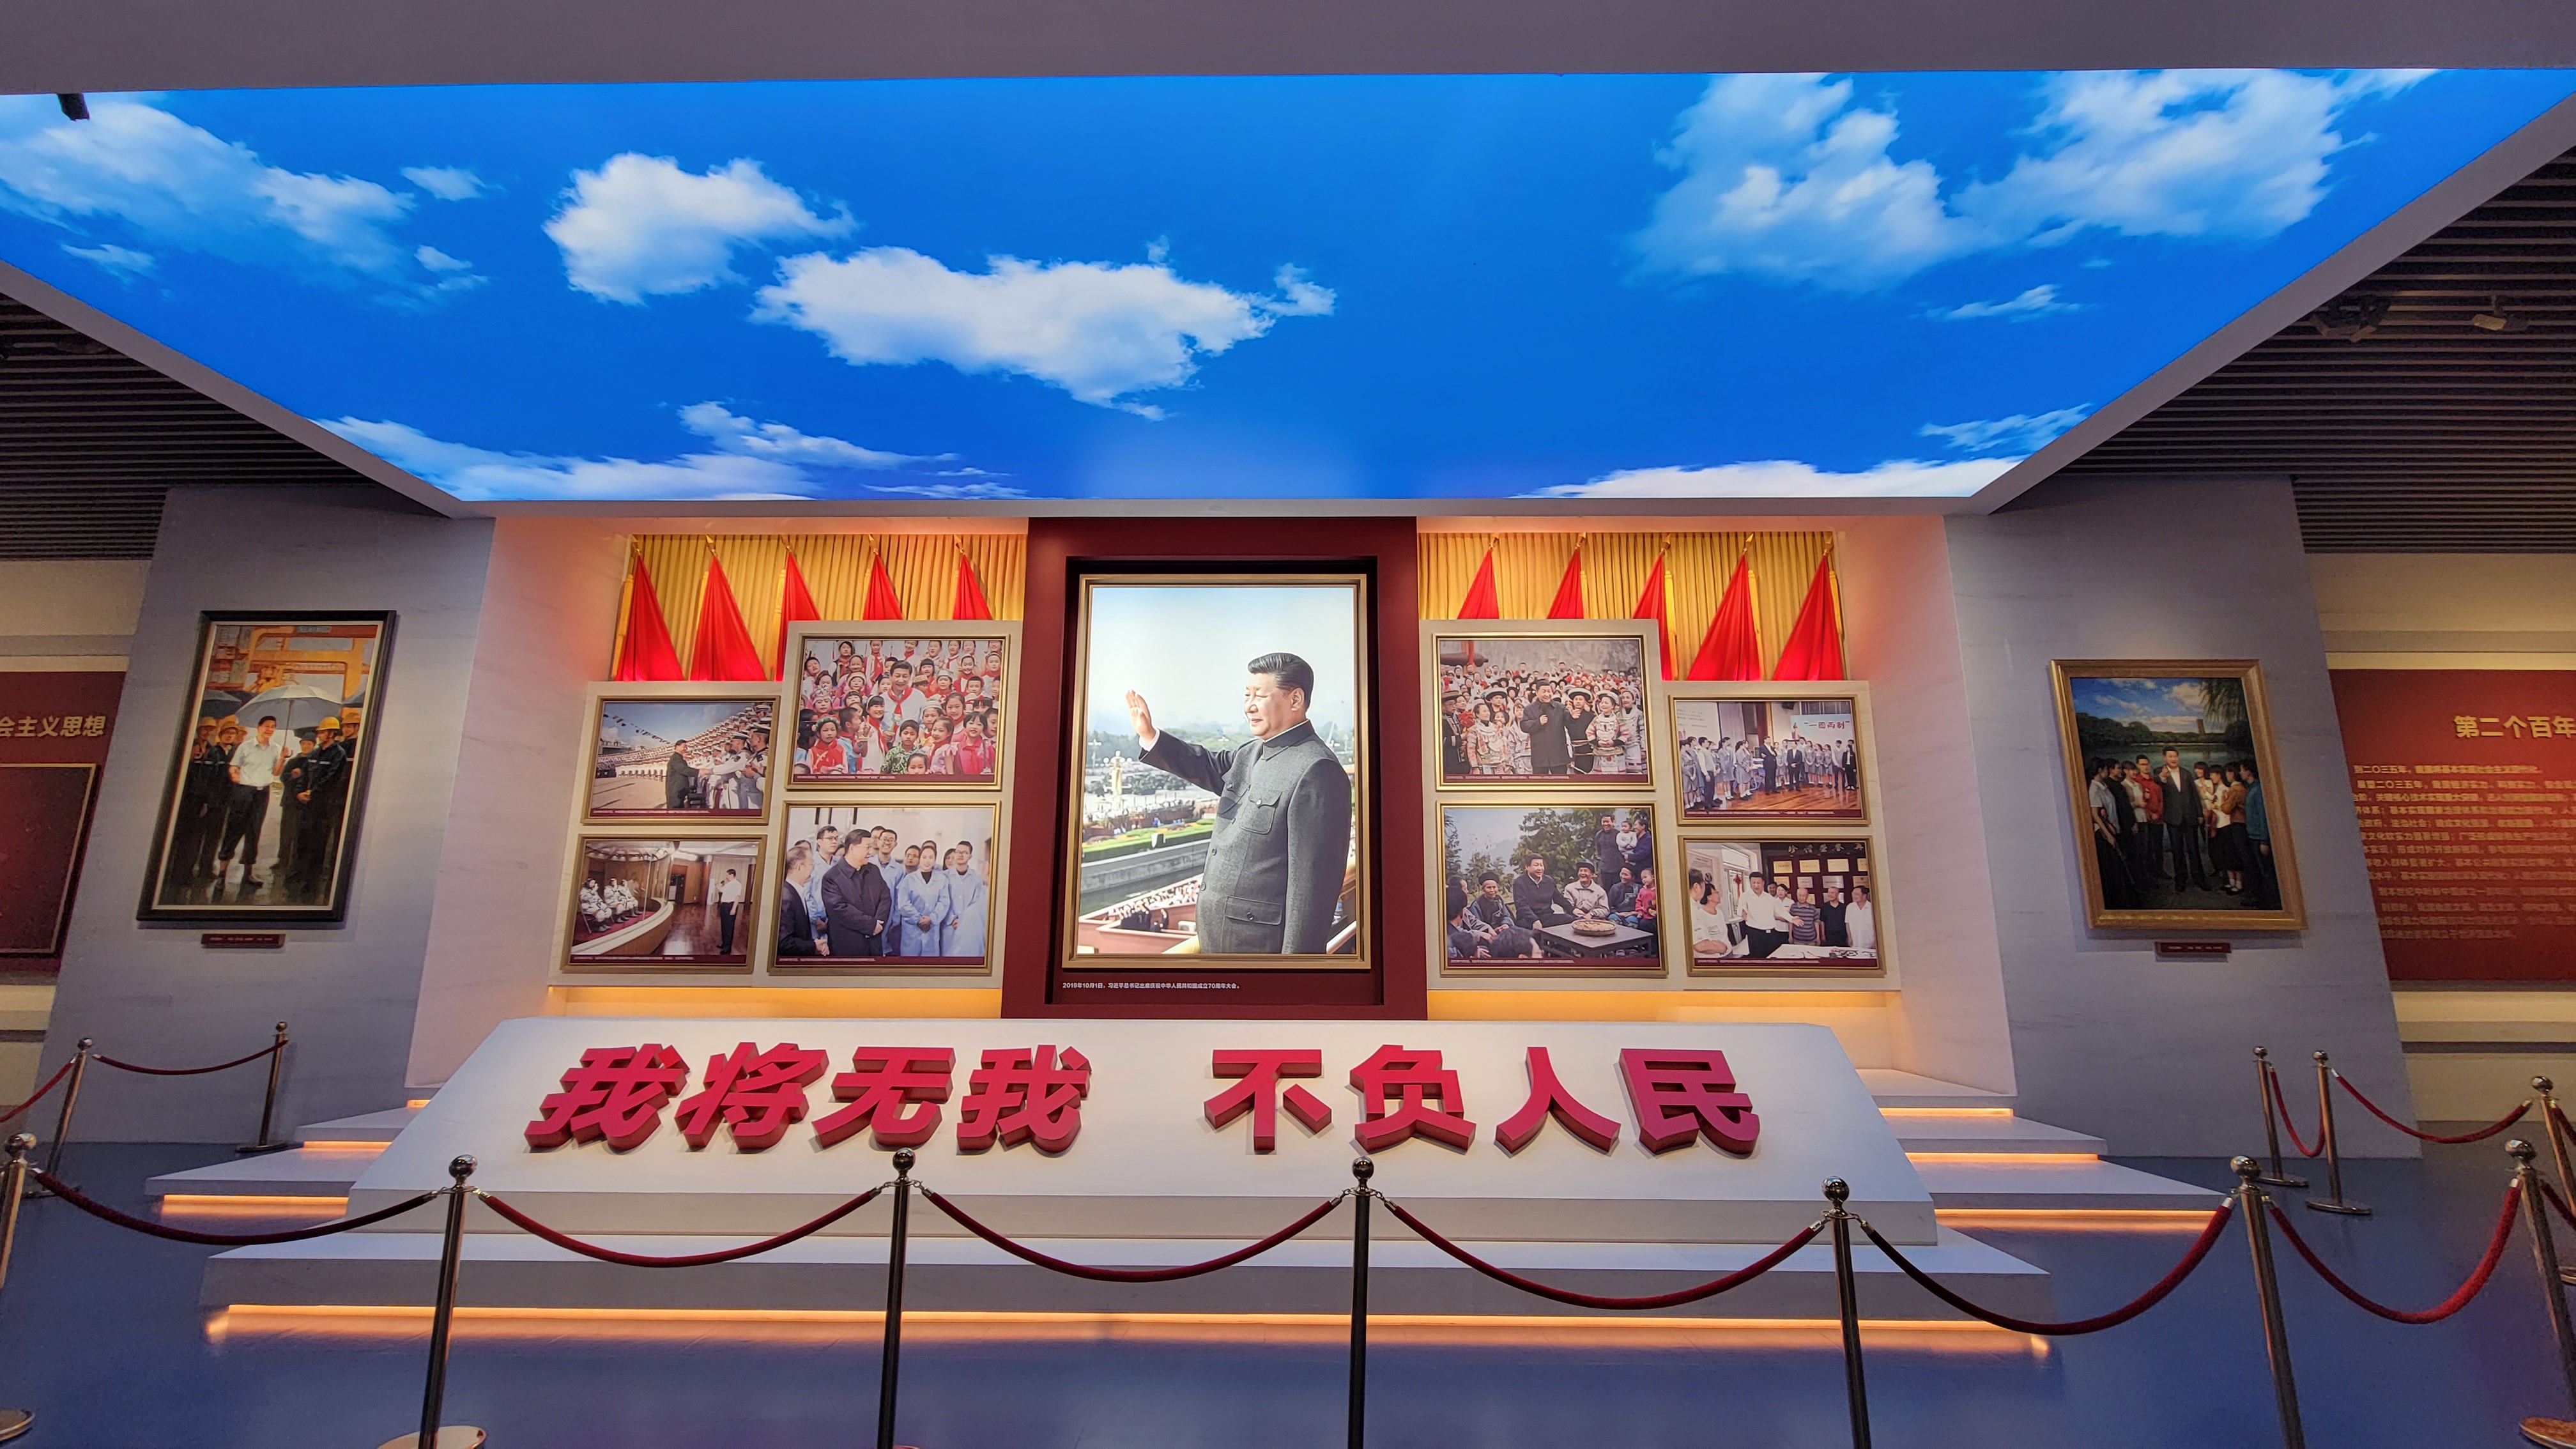 시진핑 주석 전시 공간은 천장을 하늘 모습으로 환하게 장식했다. (조성원 기자)